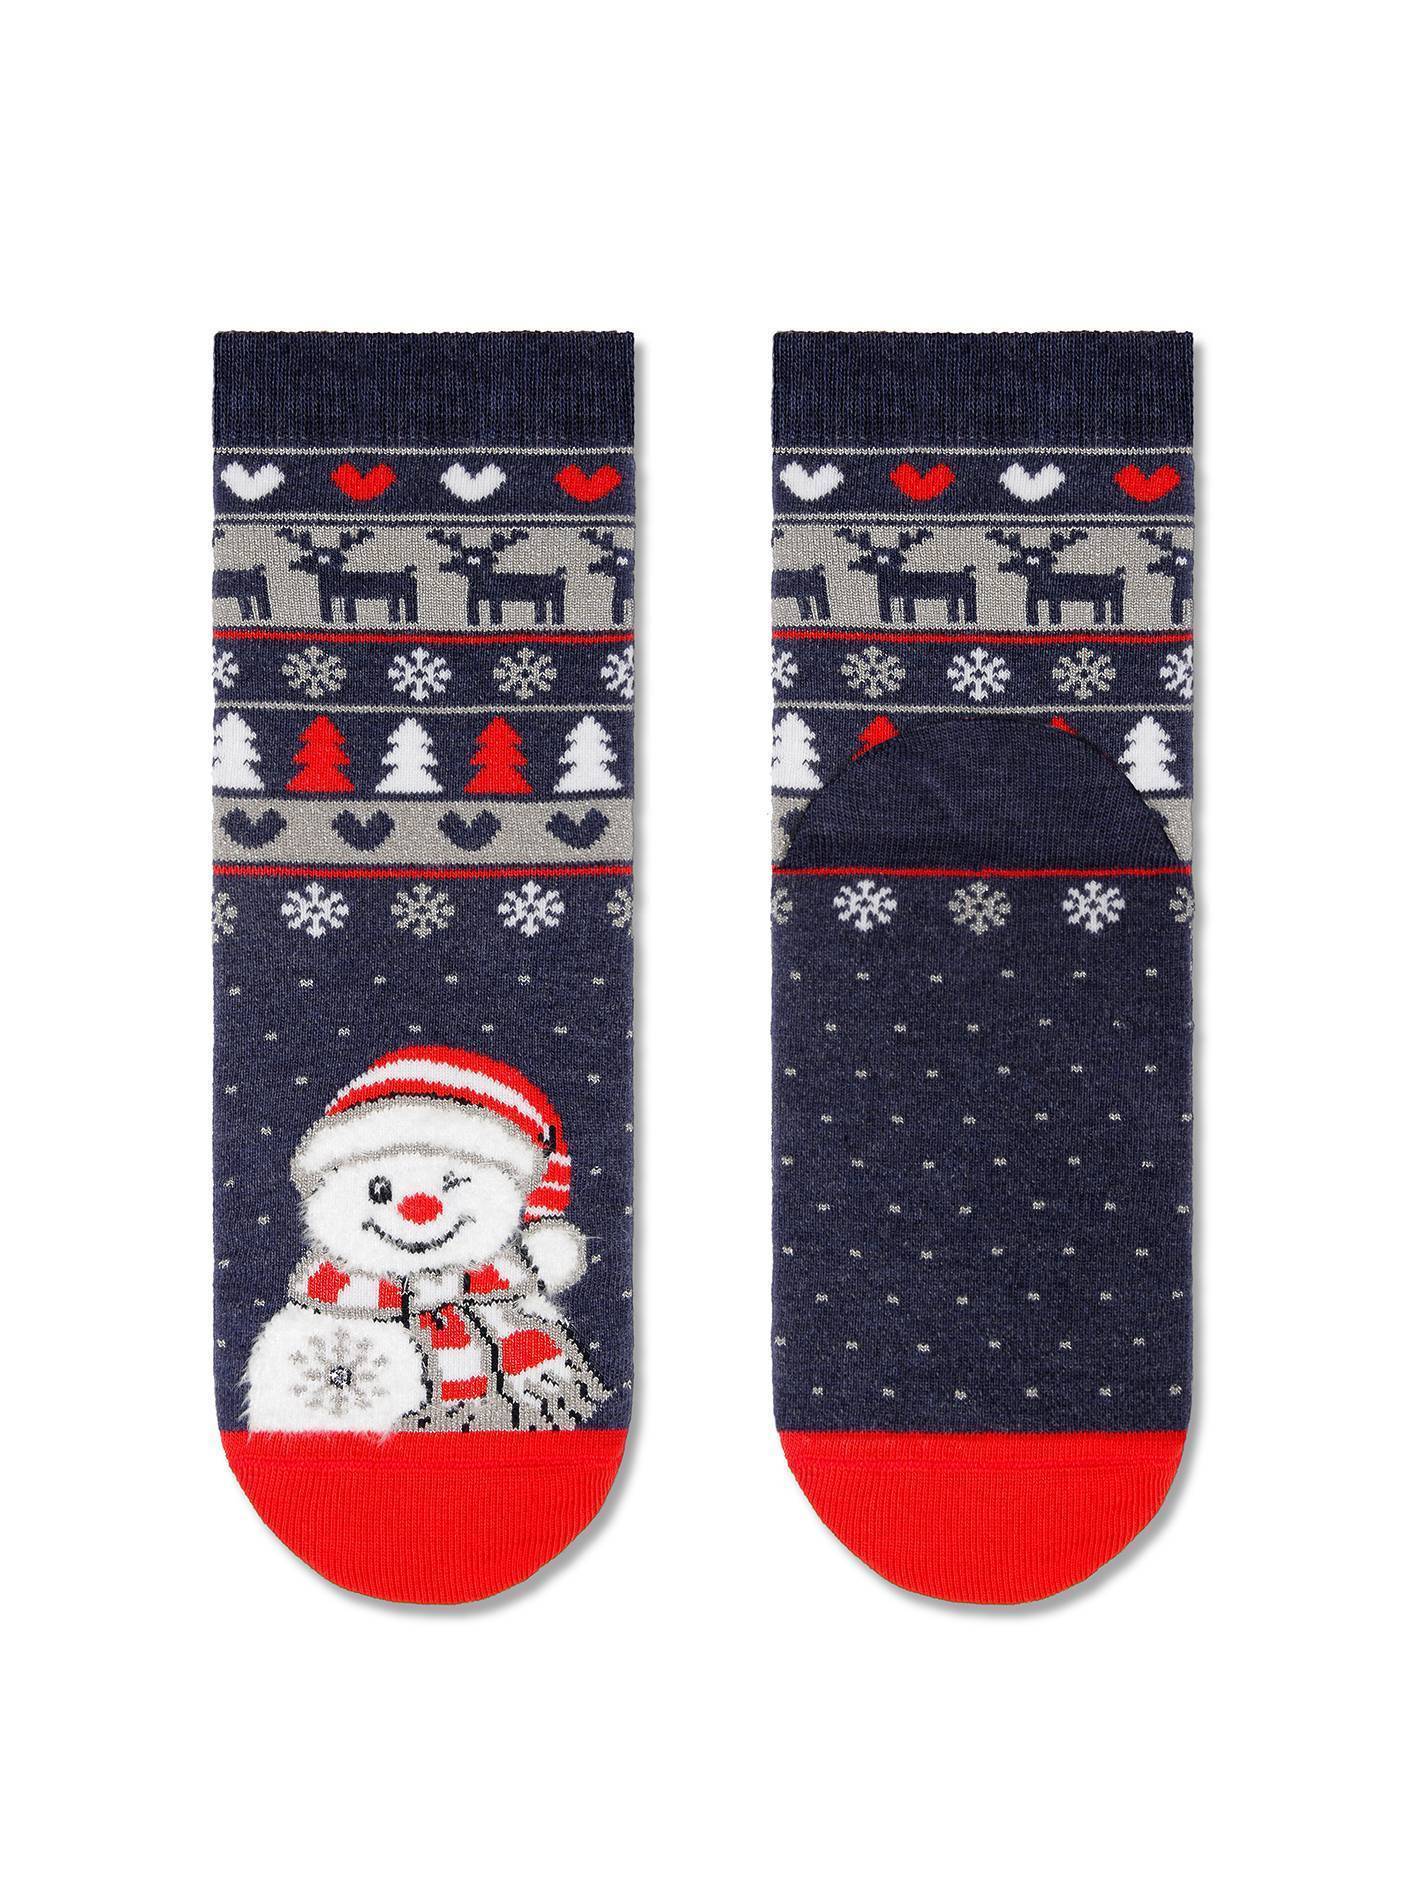 Носки детские ⭐️ Новогодние носки "Снеговик" с махровой стопой, пушистой нитью, люрексом и стразами ⭐️